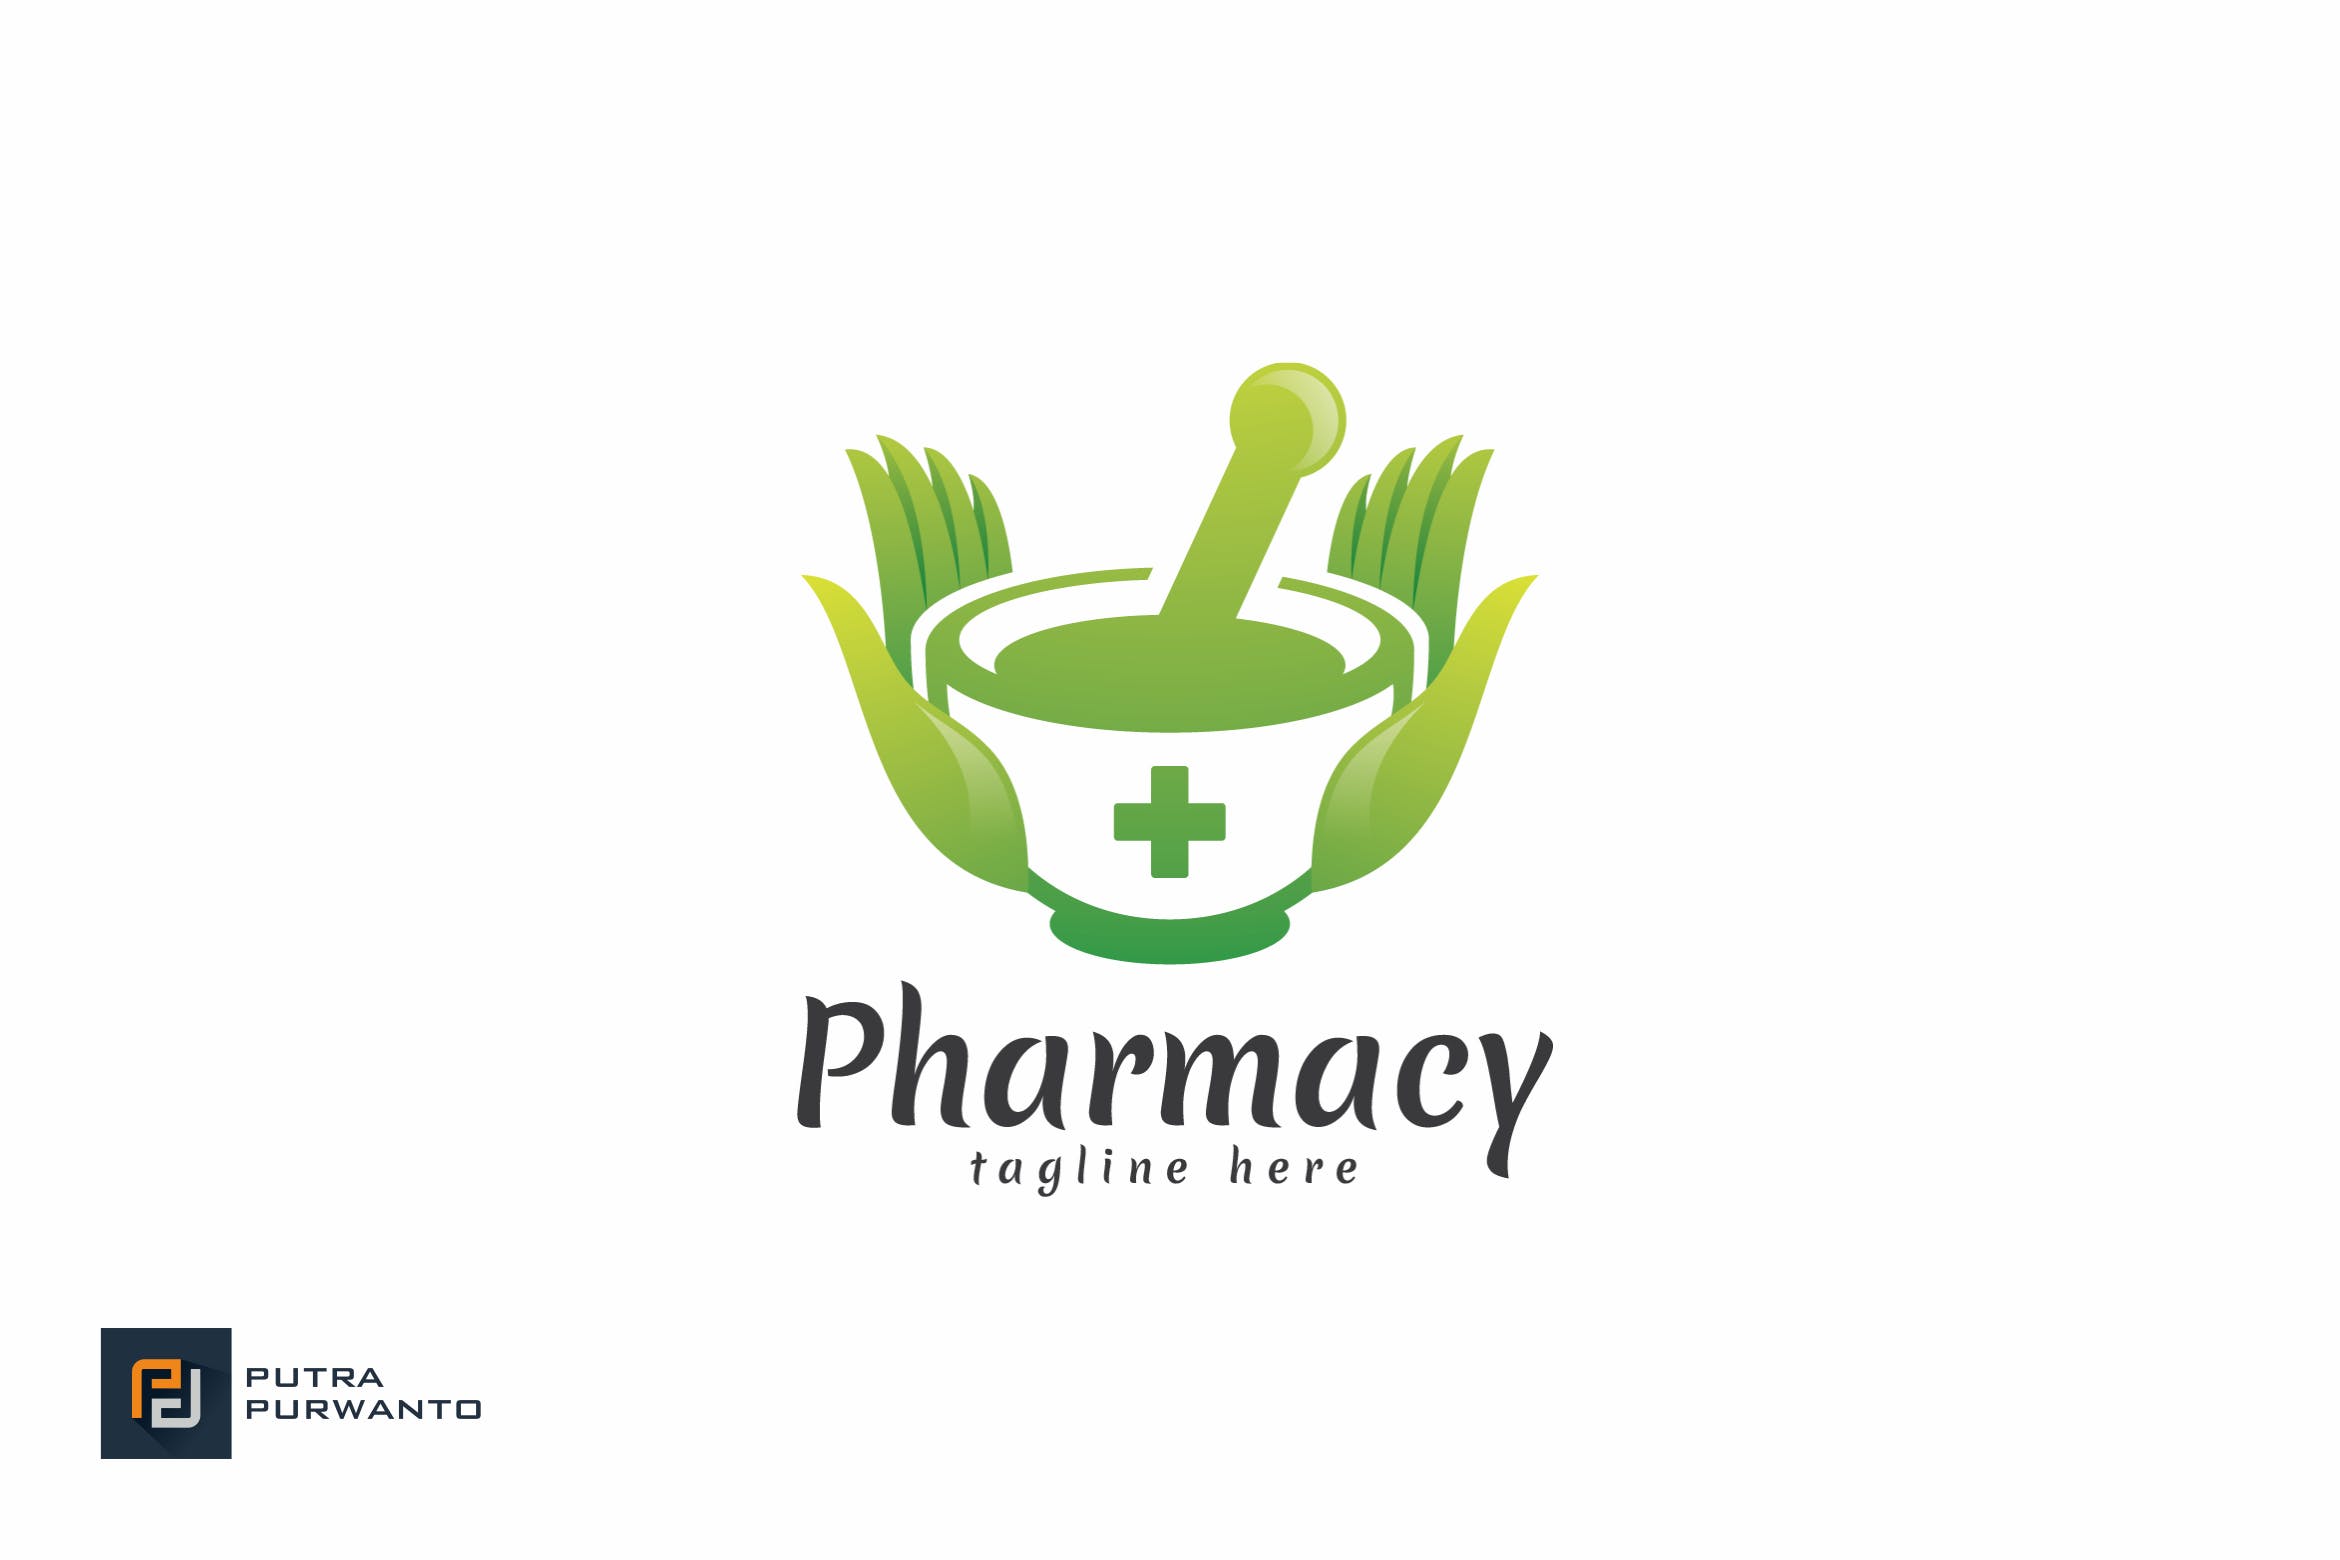 药房商标品牌Logo设计第一素材精选模板 Pharmacy – Logo Template插图